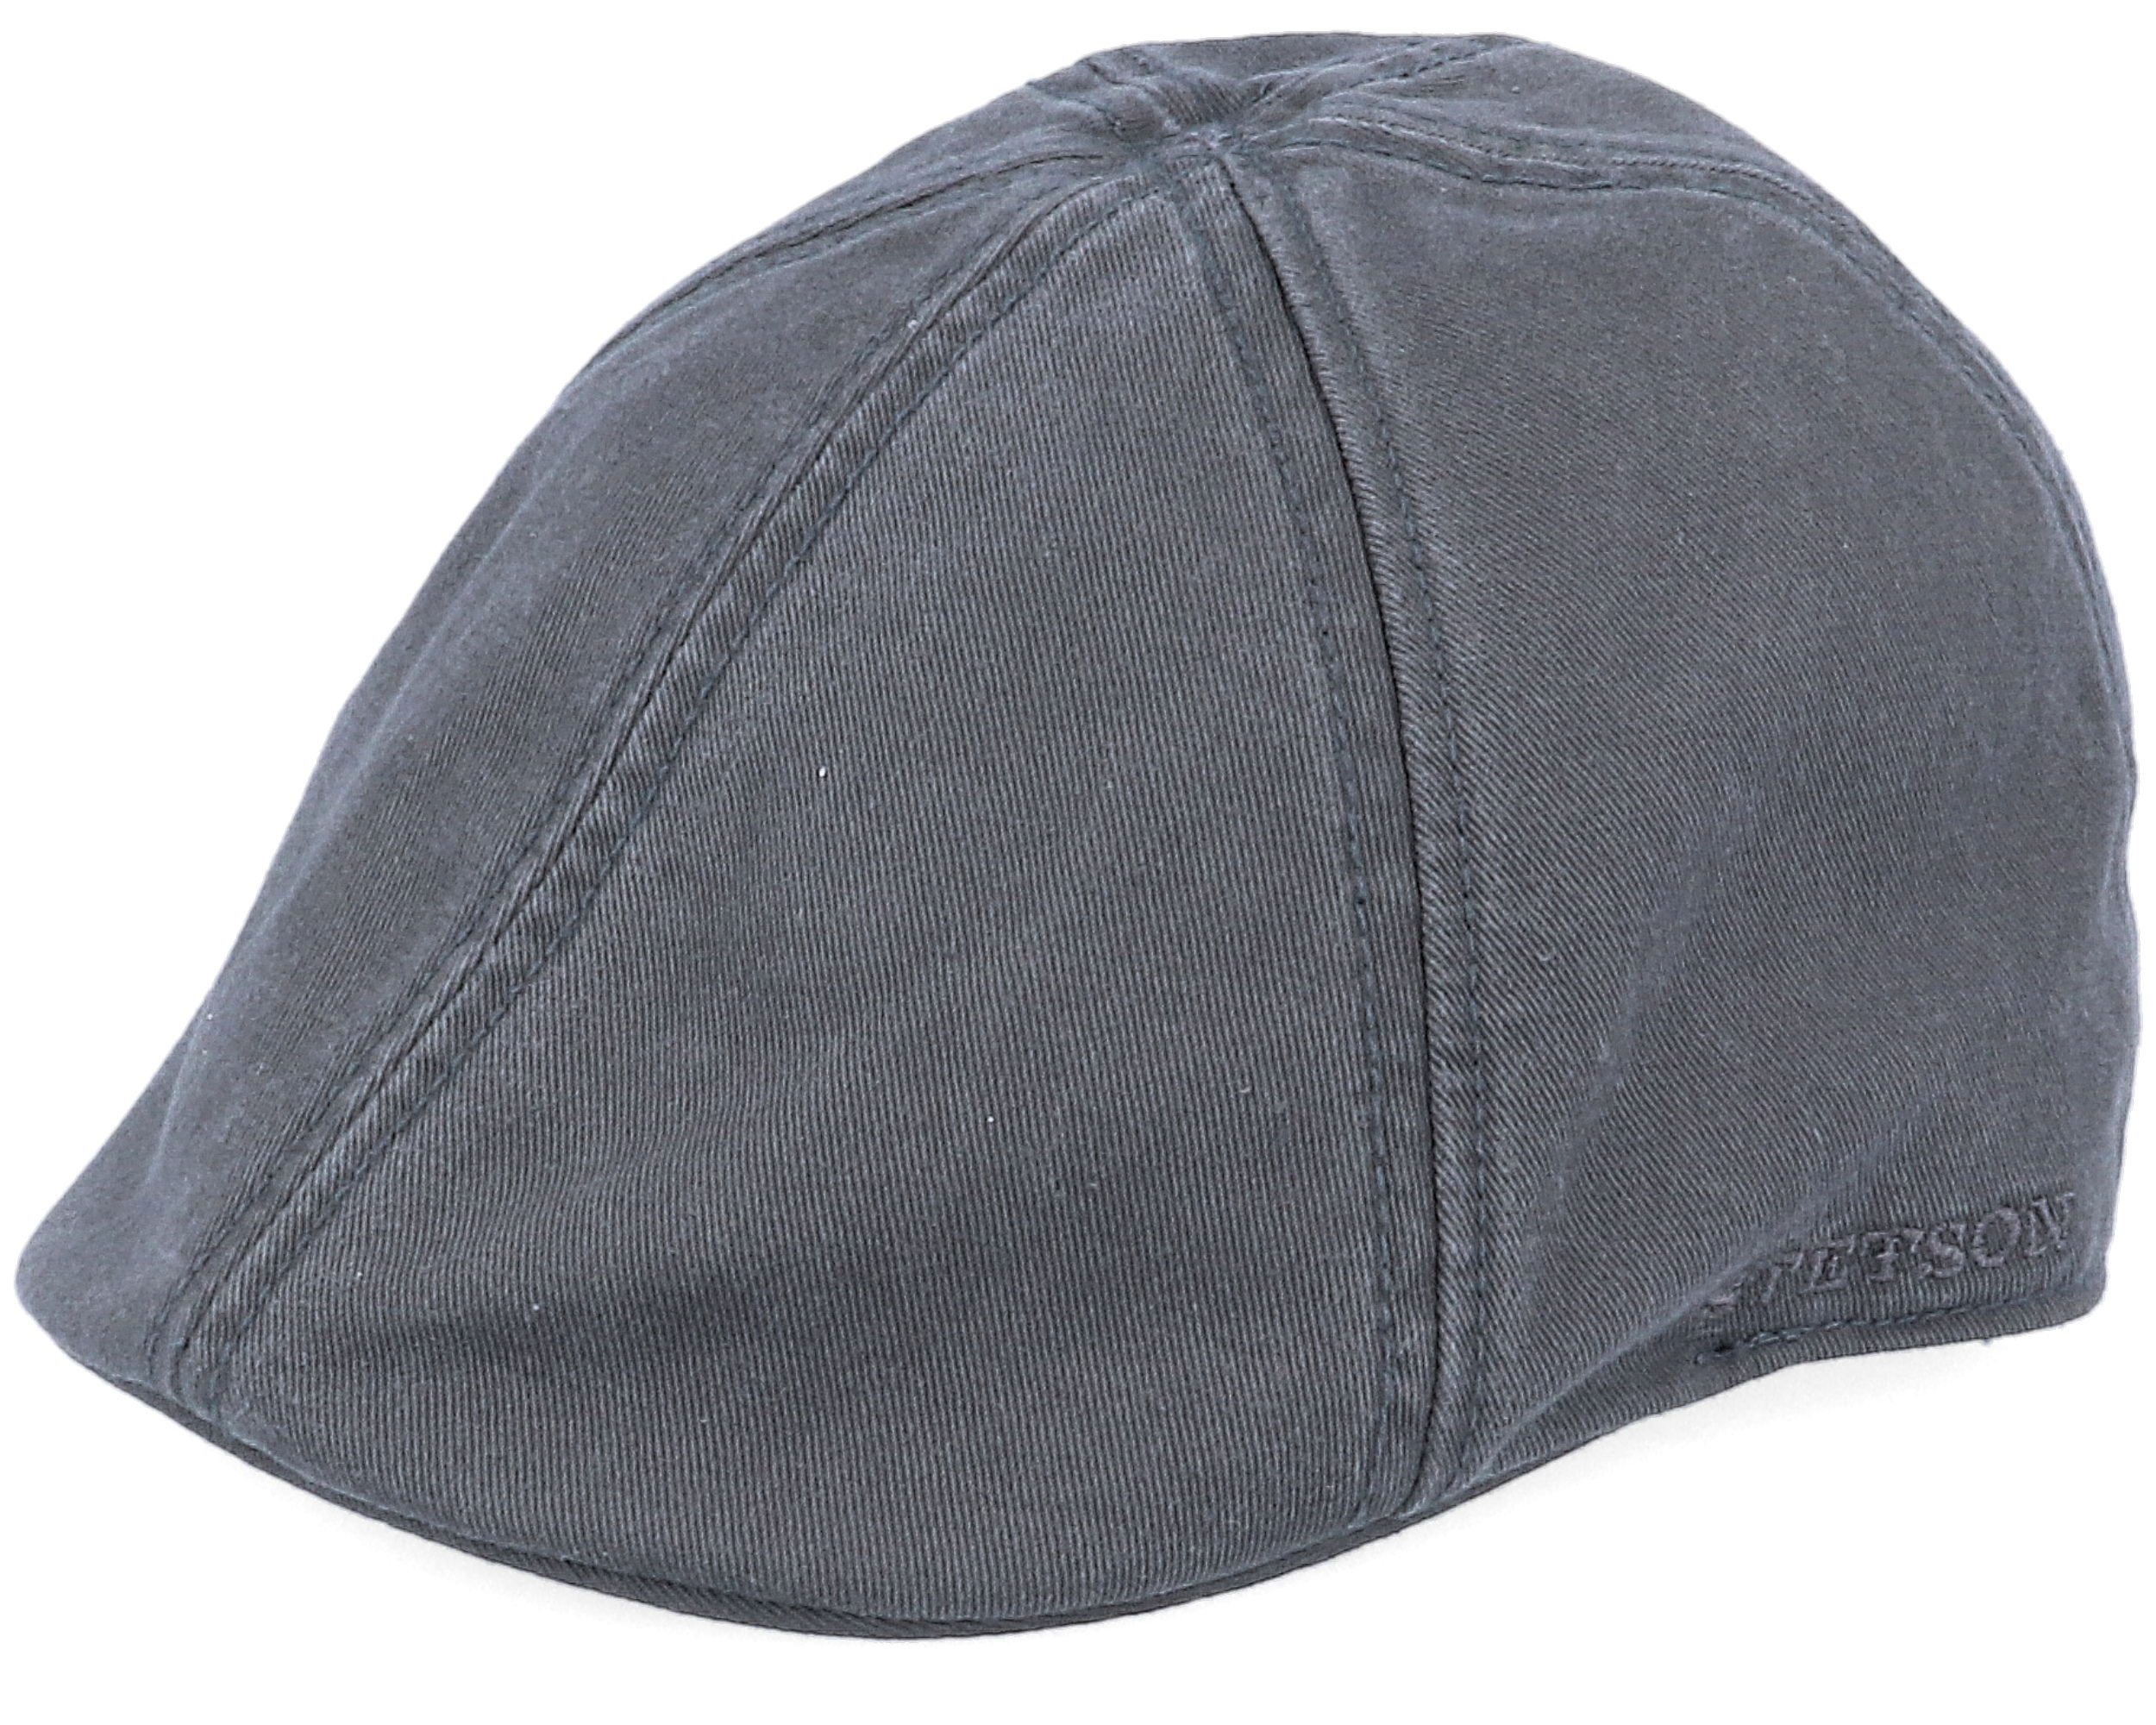 Texas Cotton Vintage Black Flat Cap - Stetson caps - Hatstoreworld.com